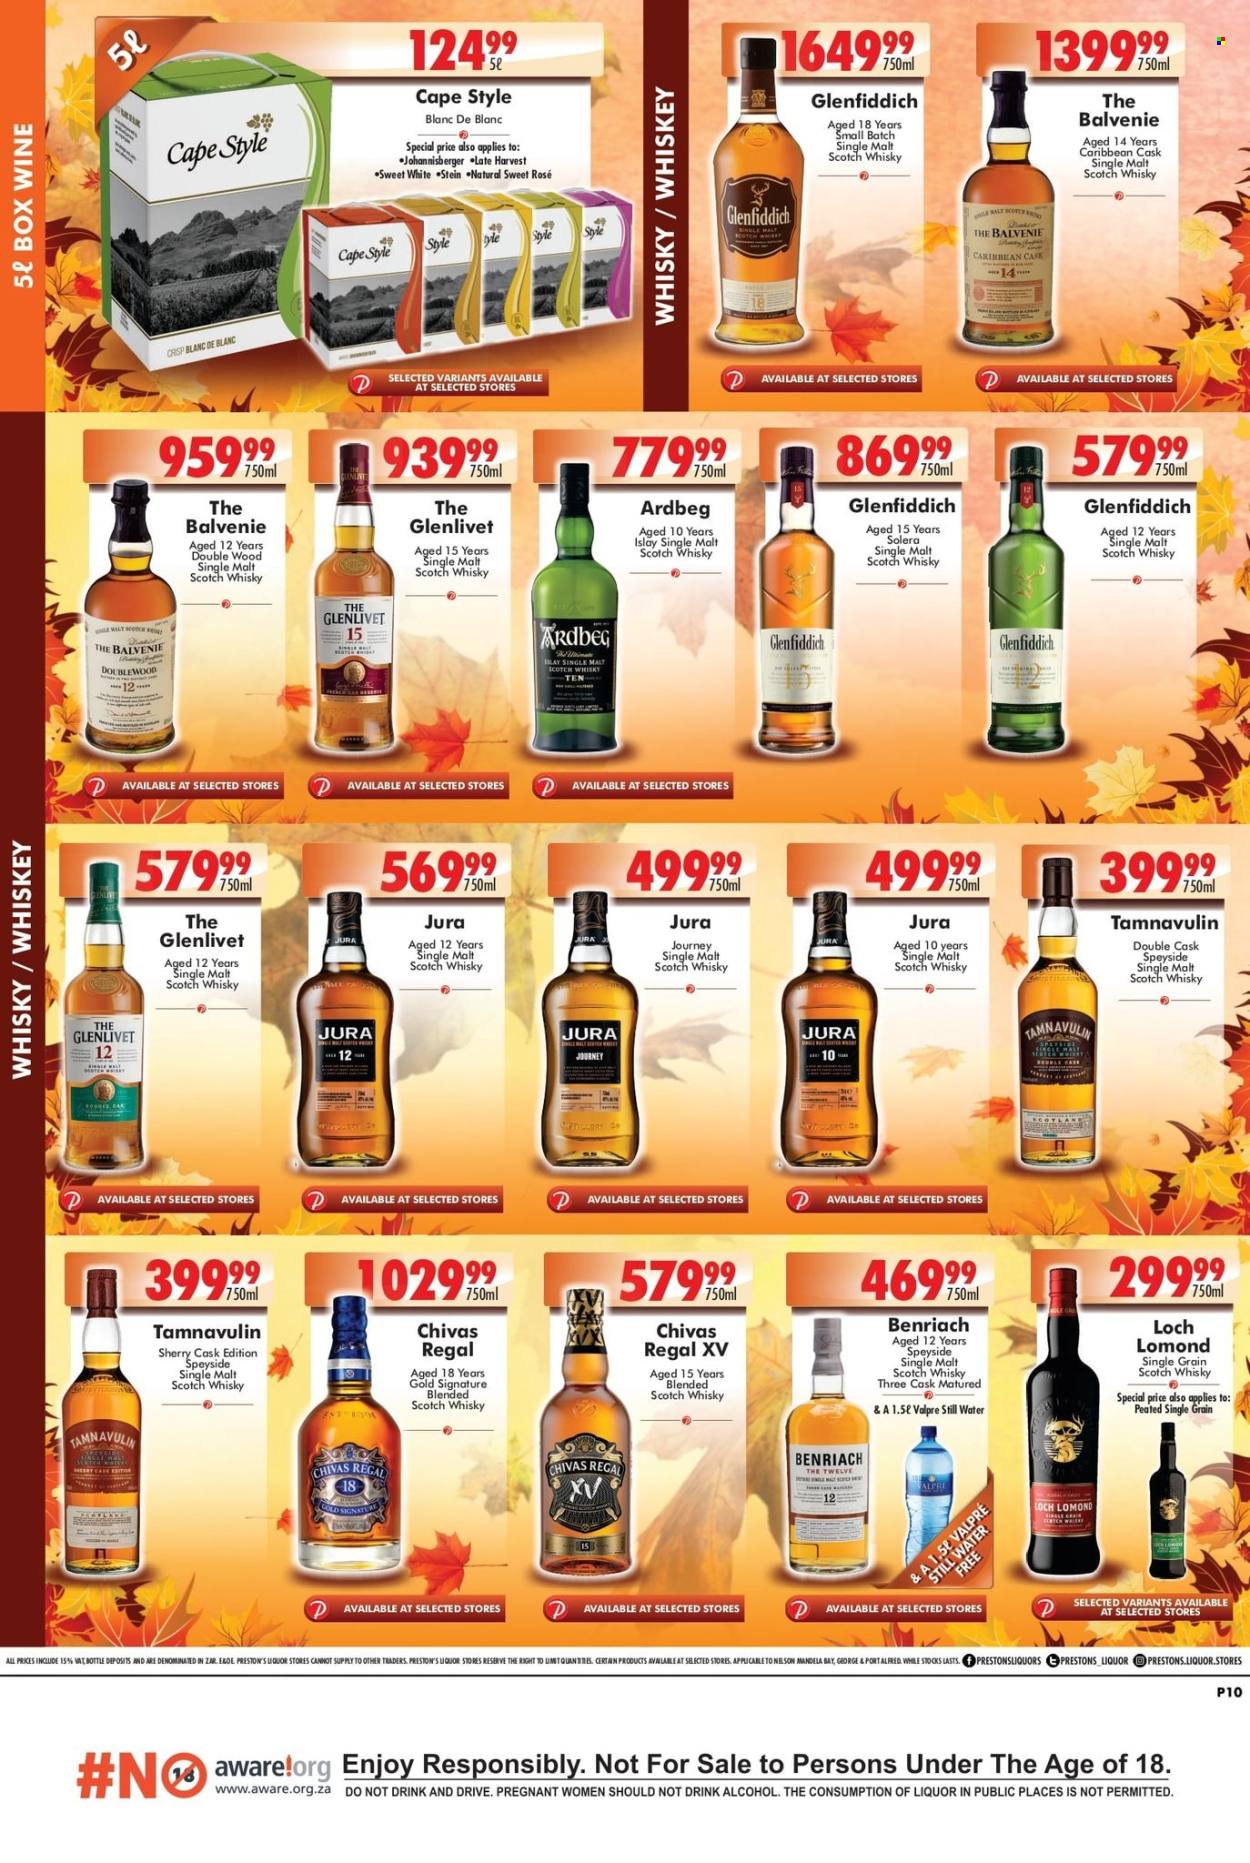 Prestons Liquor Stores specials - 03.28.2024 - 04.01.2024. 